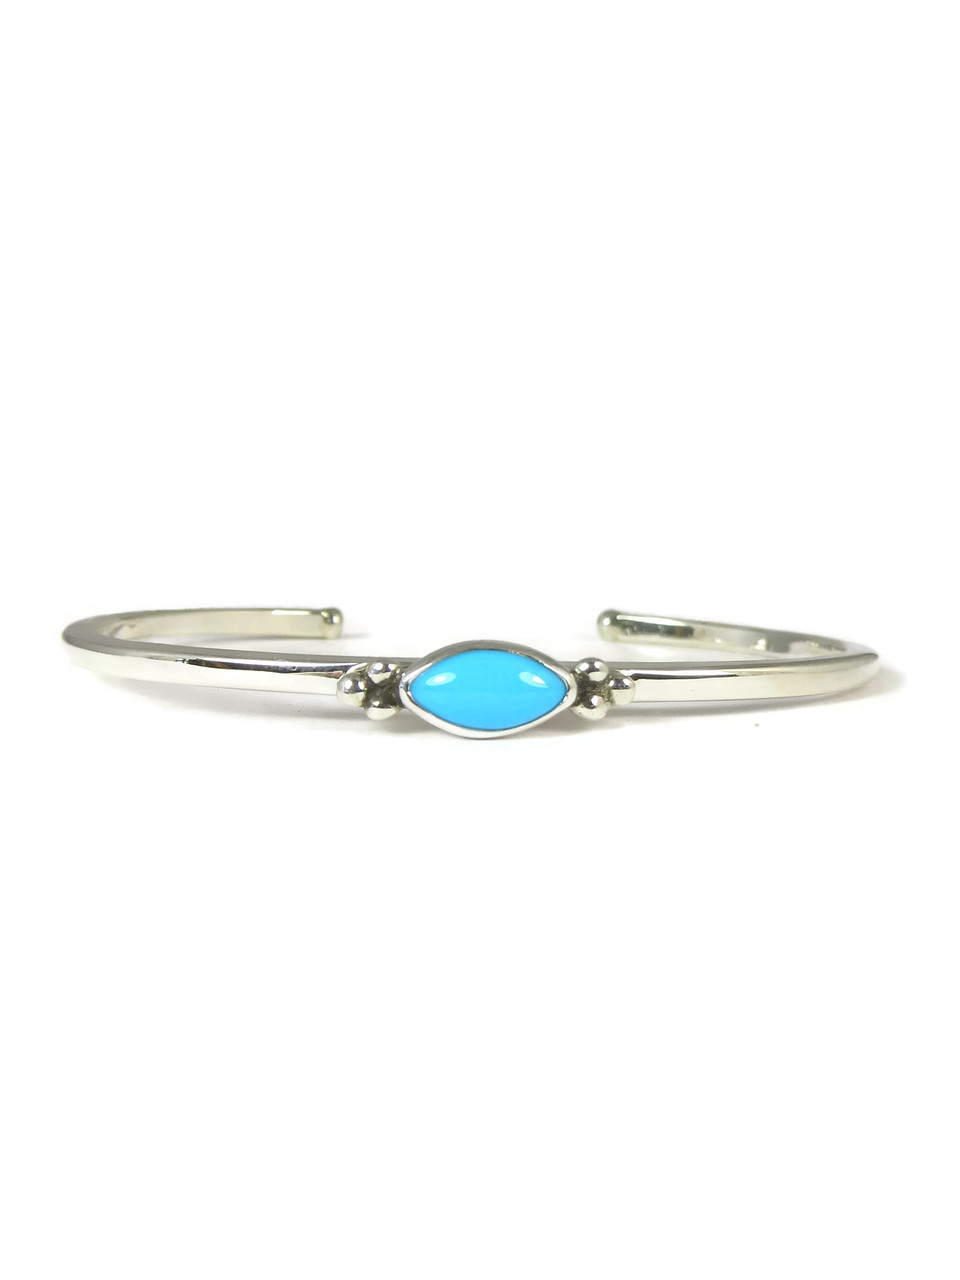 Dainty Sleeping Beauty Turquoise Bracelet (BR4492) - Southwest Silver ...